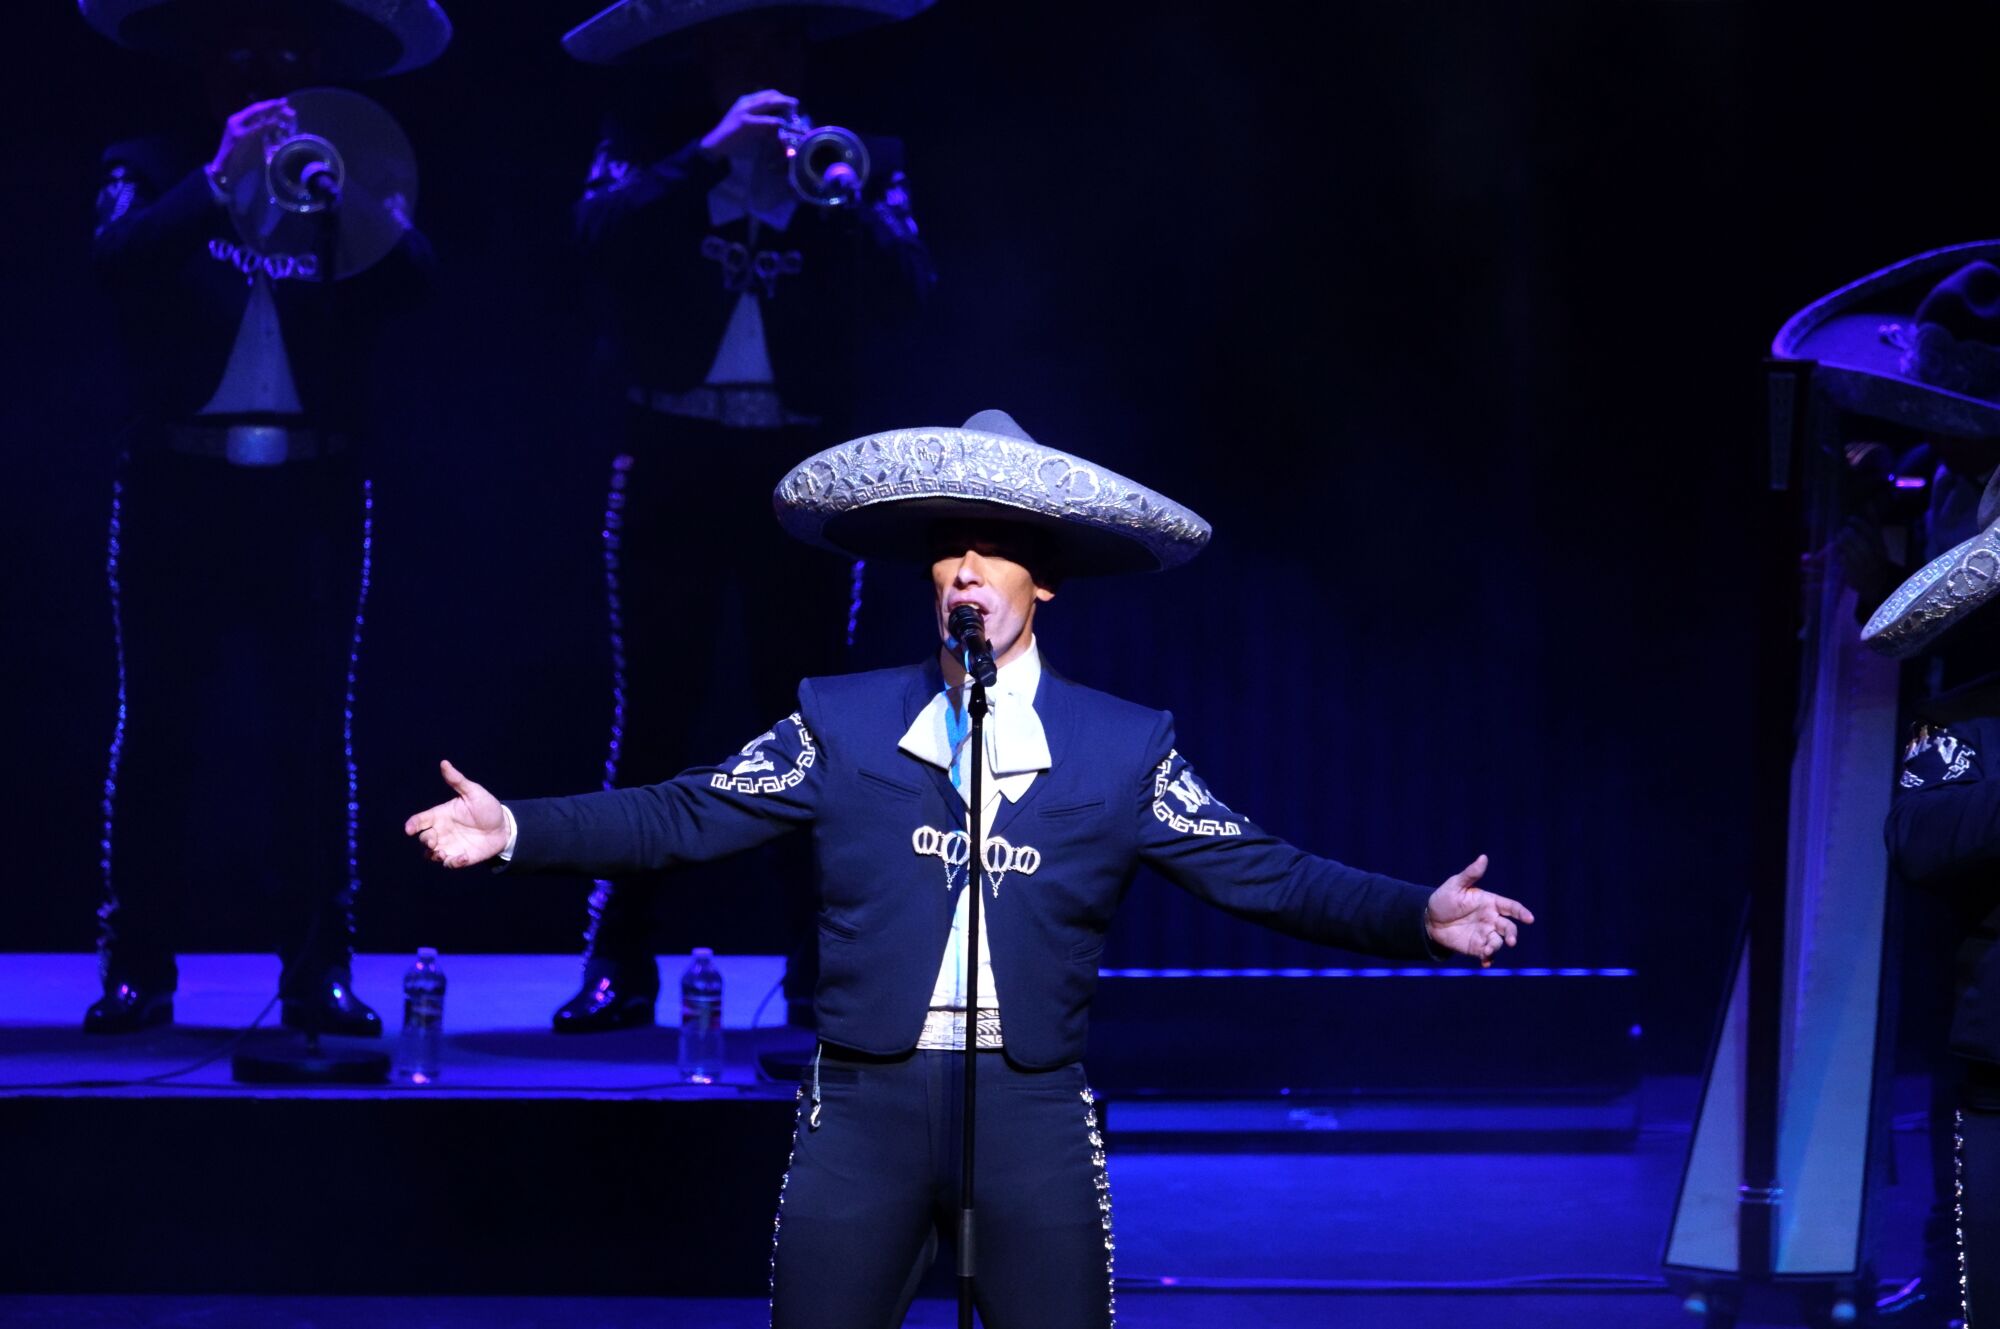 El Mariachi Vargas de Tecalitlán cautiva al público angelino y rinde  tributo a los grandes en su nuevo show - Los Angeles Times